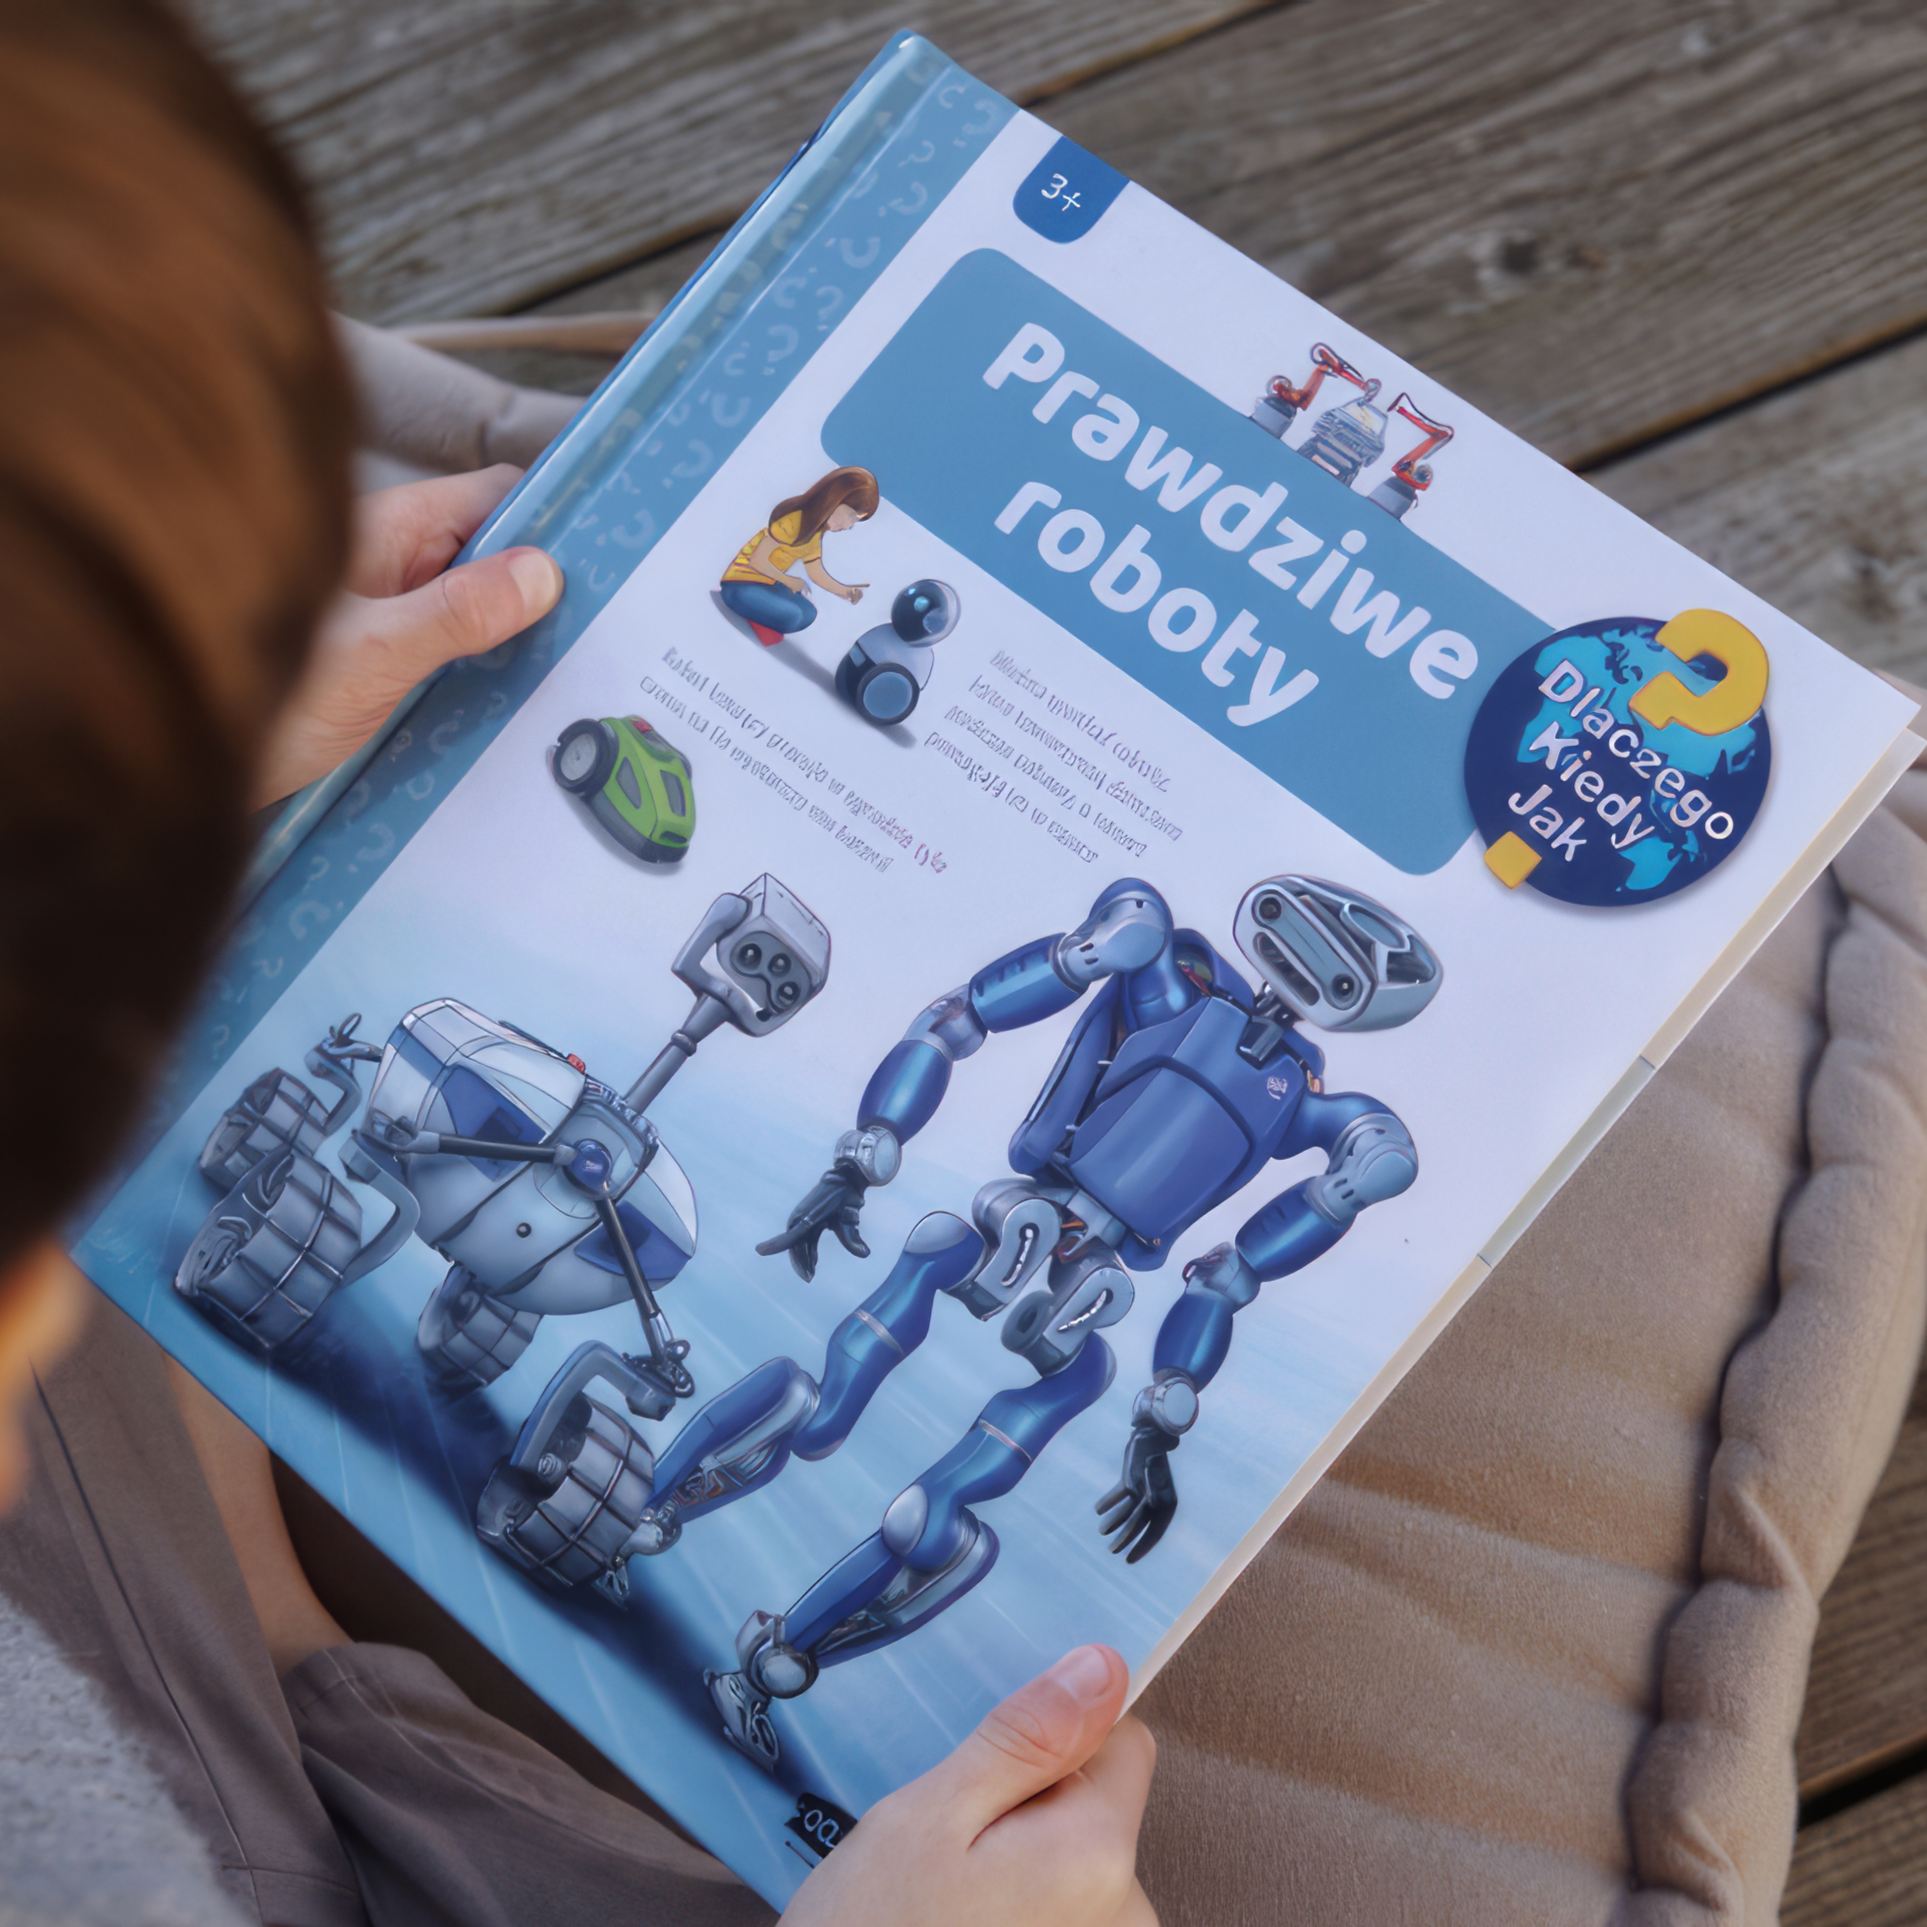 Publishing House Sam: Robots reales